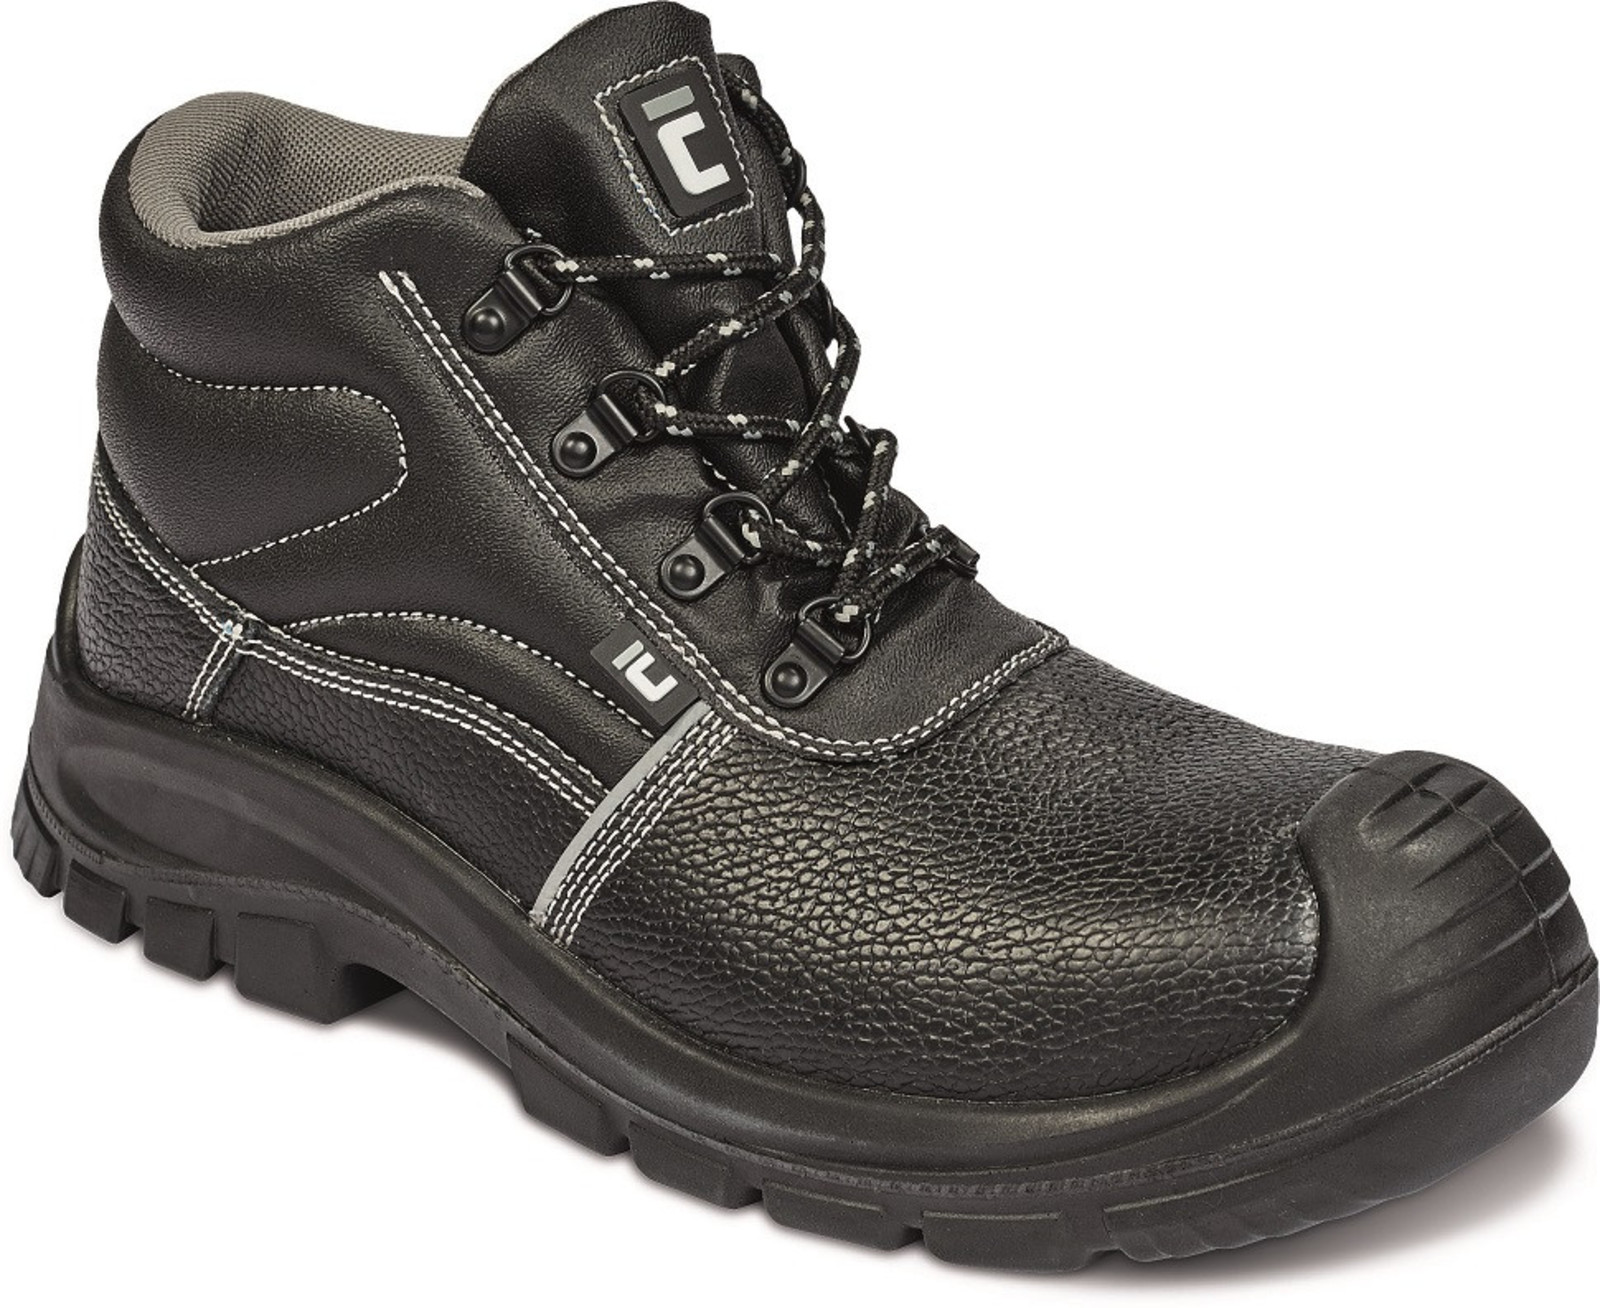 Bezpečnostná obuv Raven XT S3 Metal Free - veľkosť: 44, farba: čierna